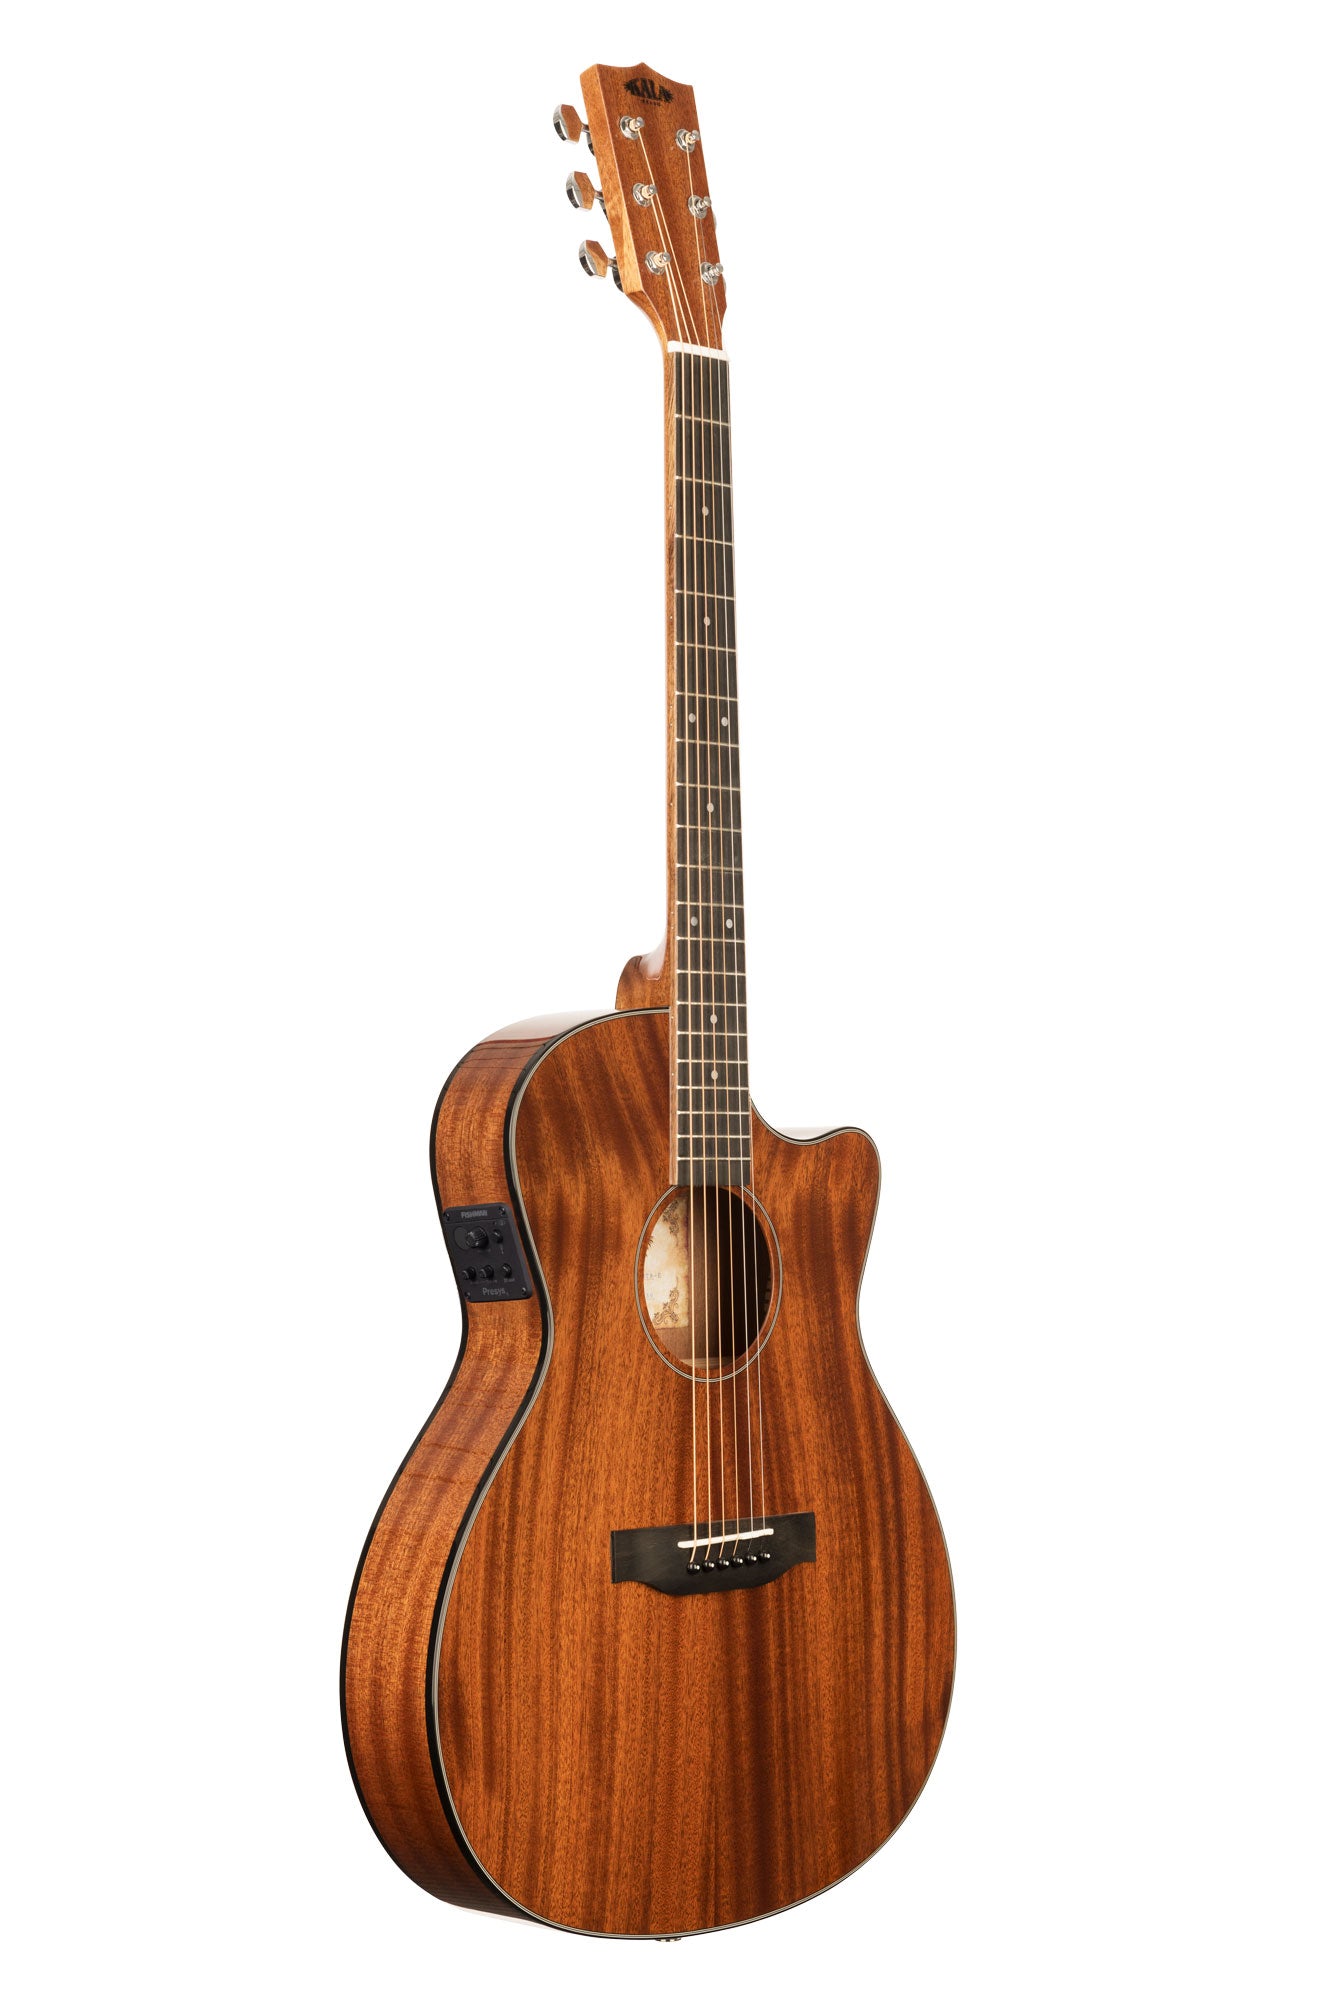 gå på indkøb jævnt gips Solid Mahogany Thinline Steel Guitar – Kala Brand Music Co.™